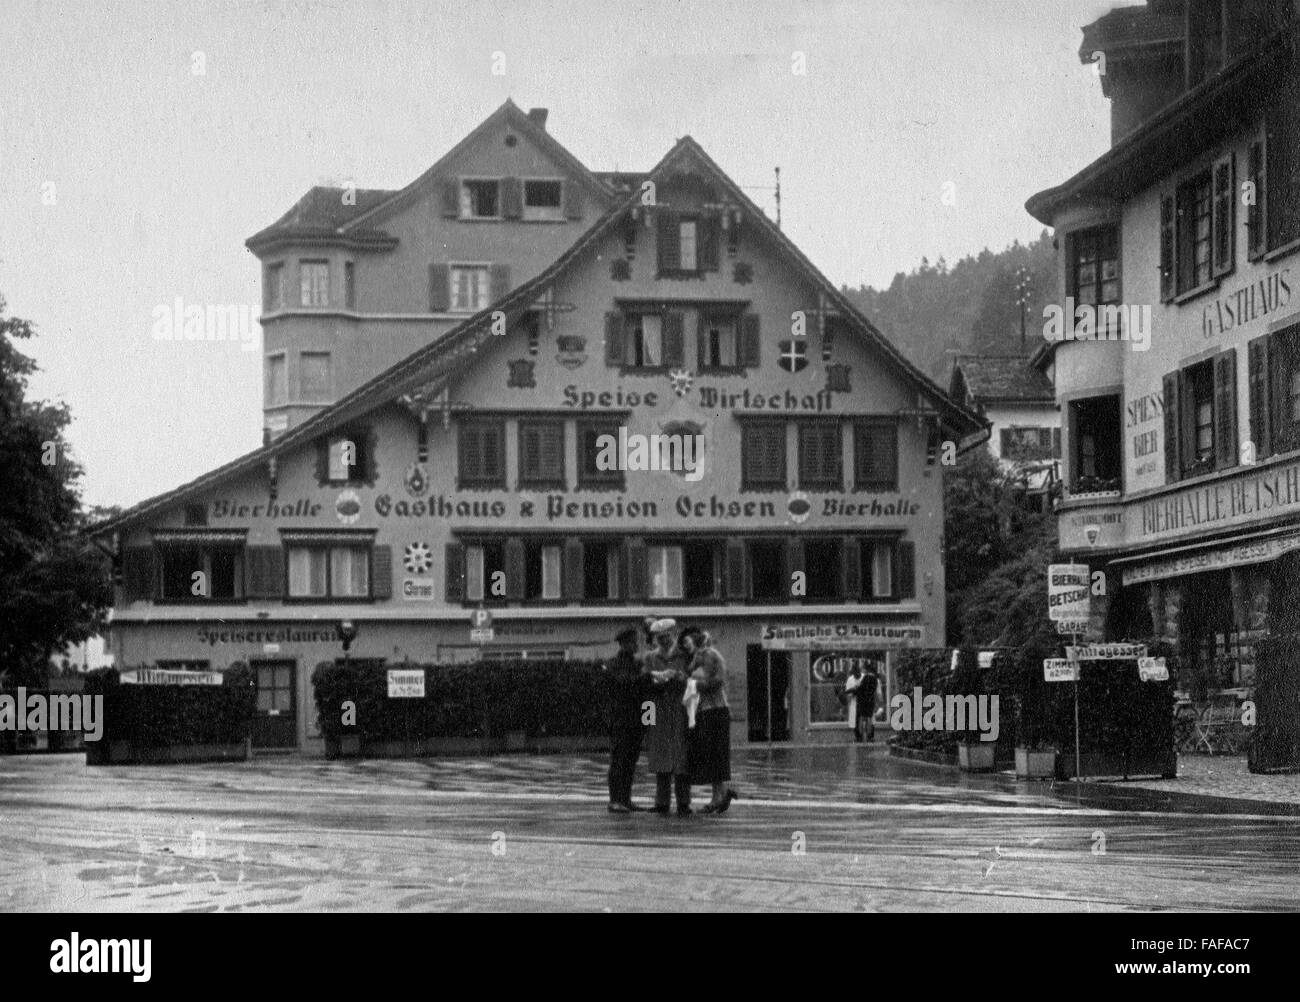 Gasthaus und Pension Ochsen in der Ortschaft Brunnen, Schweiz 1930er Jahre. Hotel e locanda "Ochsen" presso la cittadina di Brunnen, Svizzera 1930s. Foto Stock